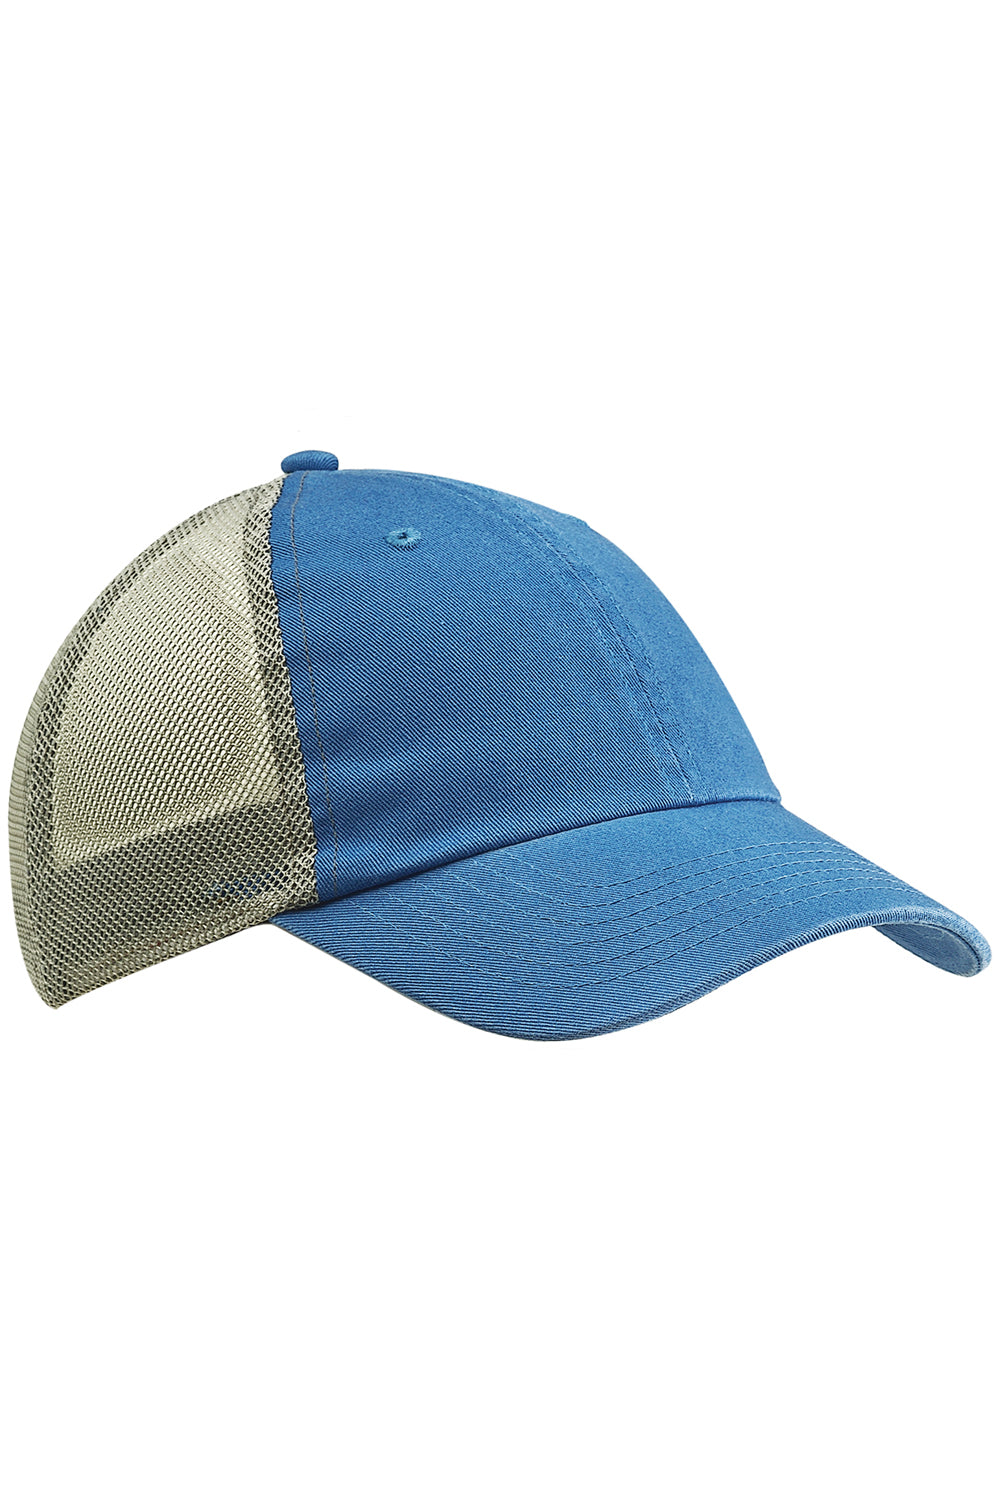 Big Accessories BA601 Mens Adjustable Trucker Hat Blue/Grey Flat Front